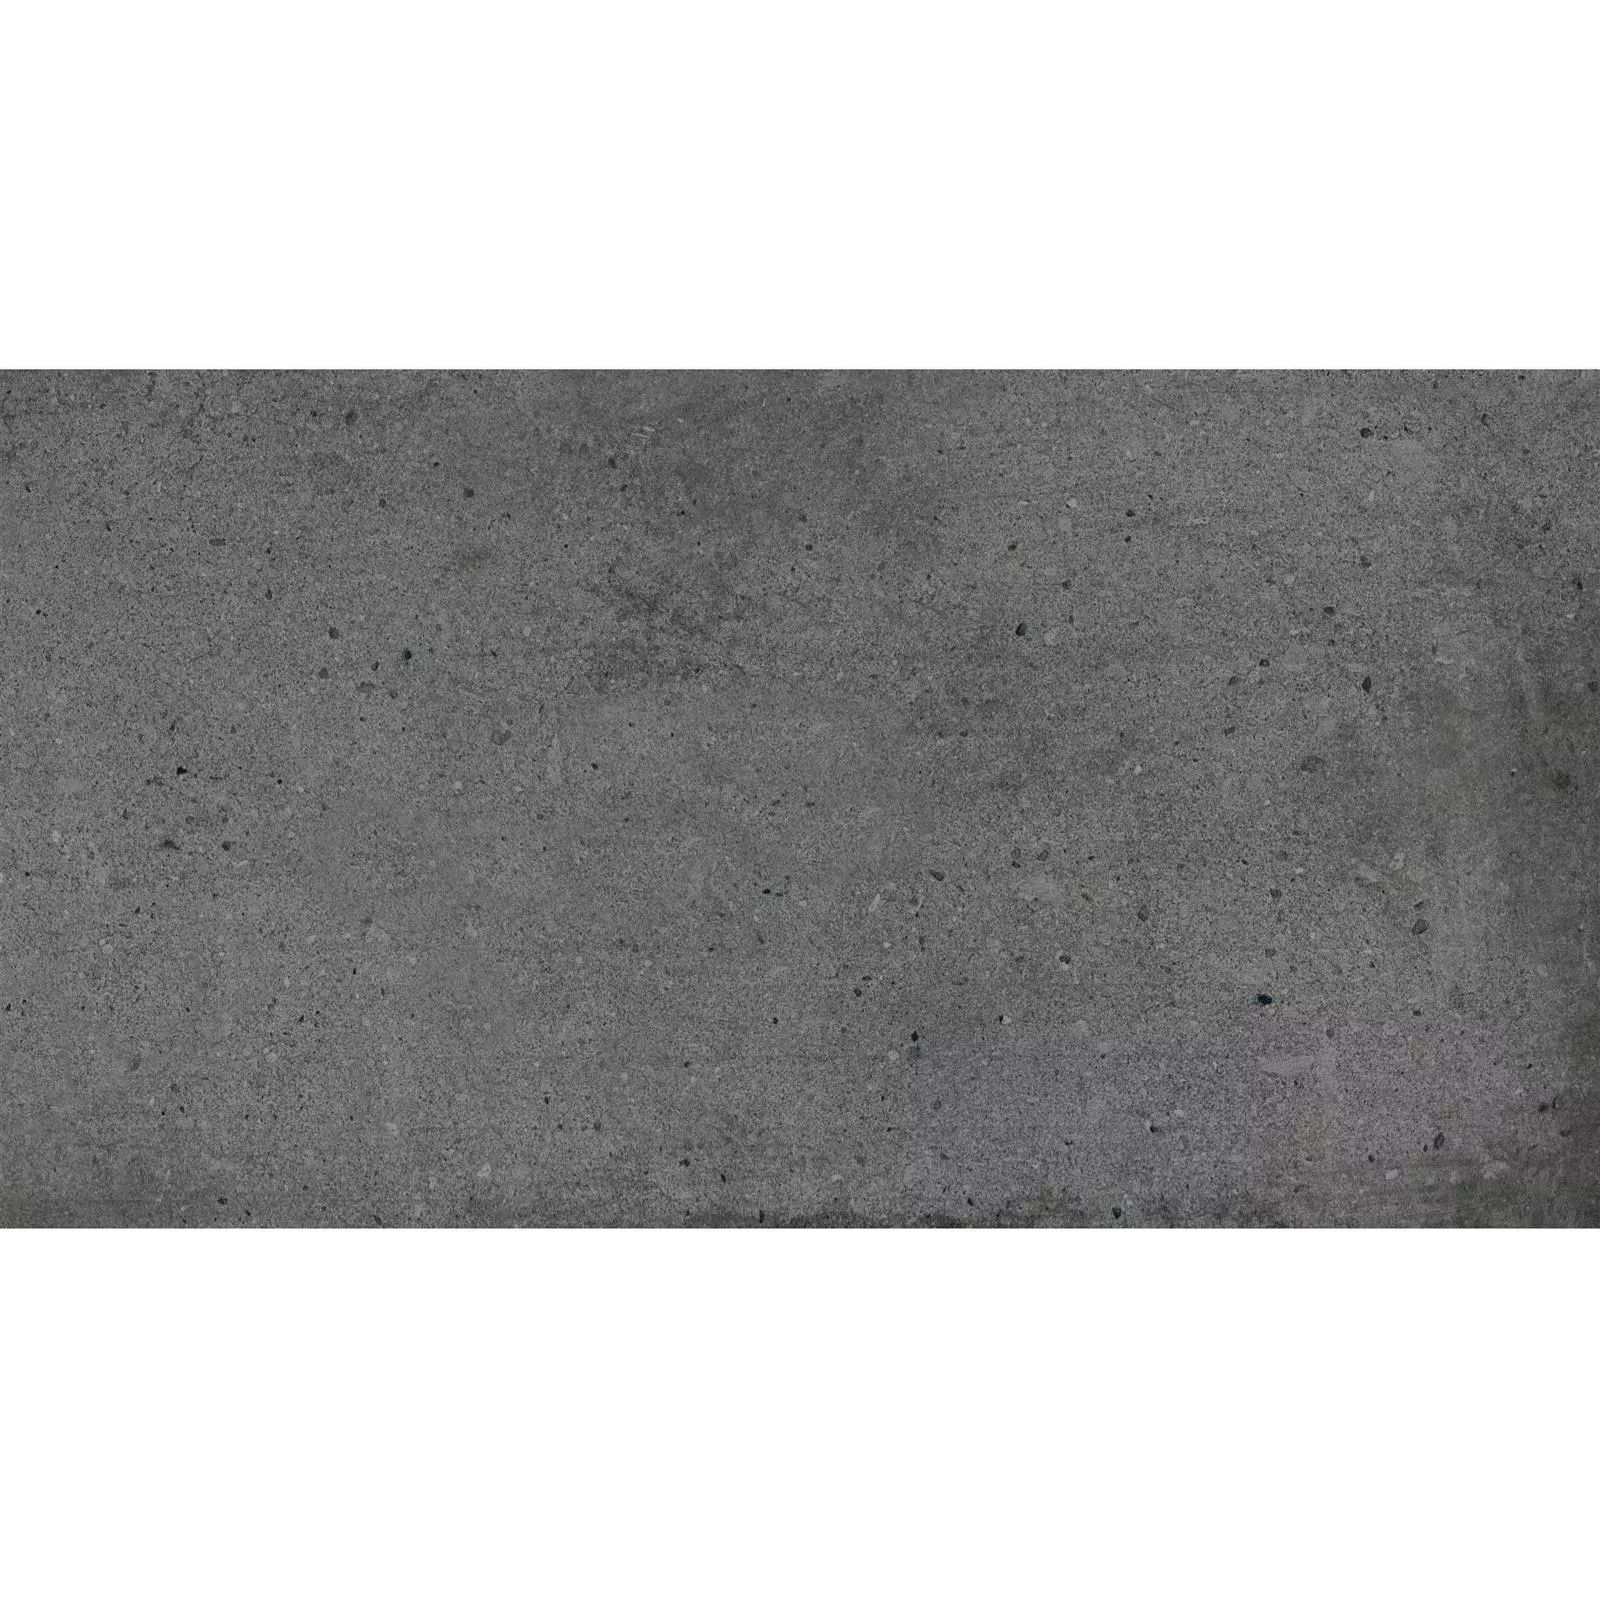 Vzorek Podlahové Dlaždice Freeland Kámen Vzhled R10/B Antracitová 30x60cm